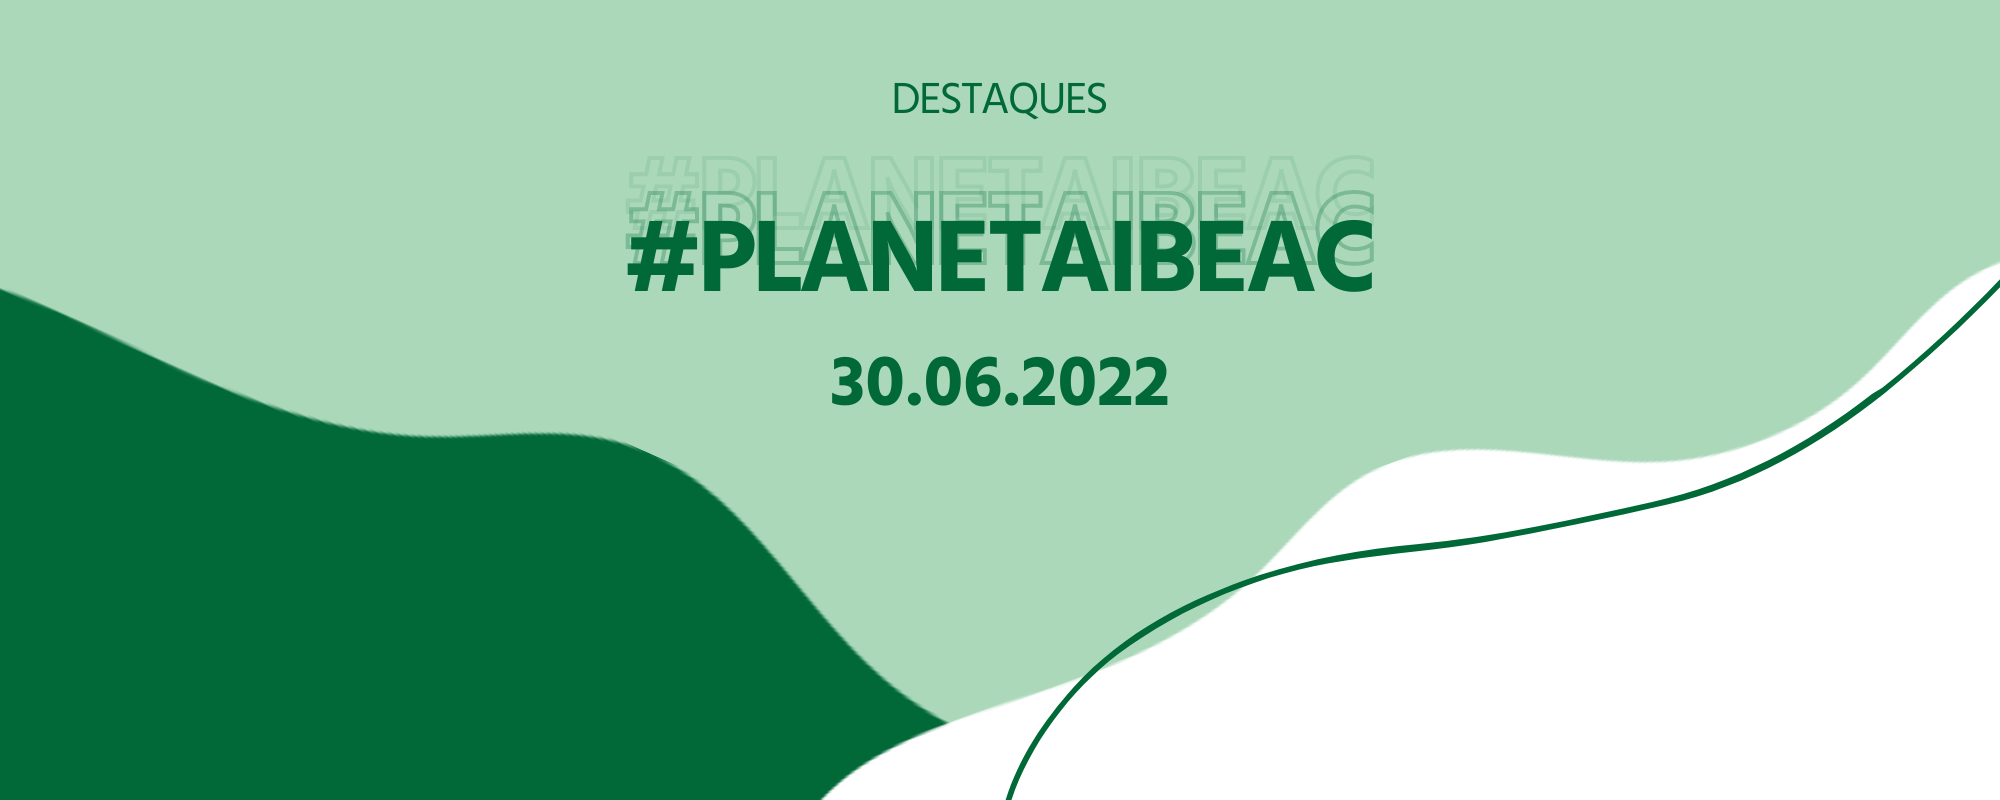 Destaques #PlanetaIbeac 30.06.2022